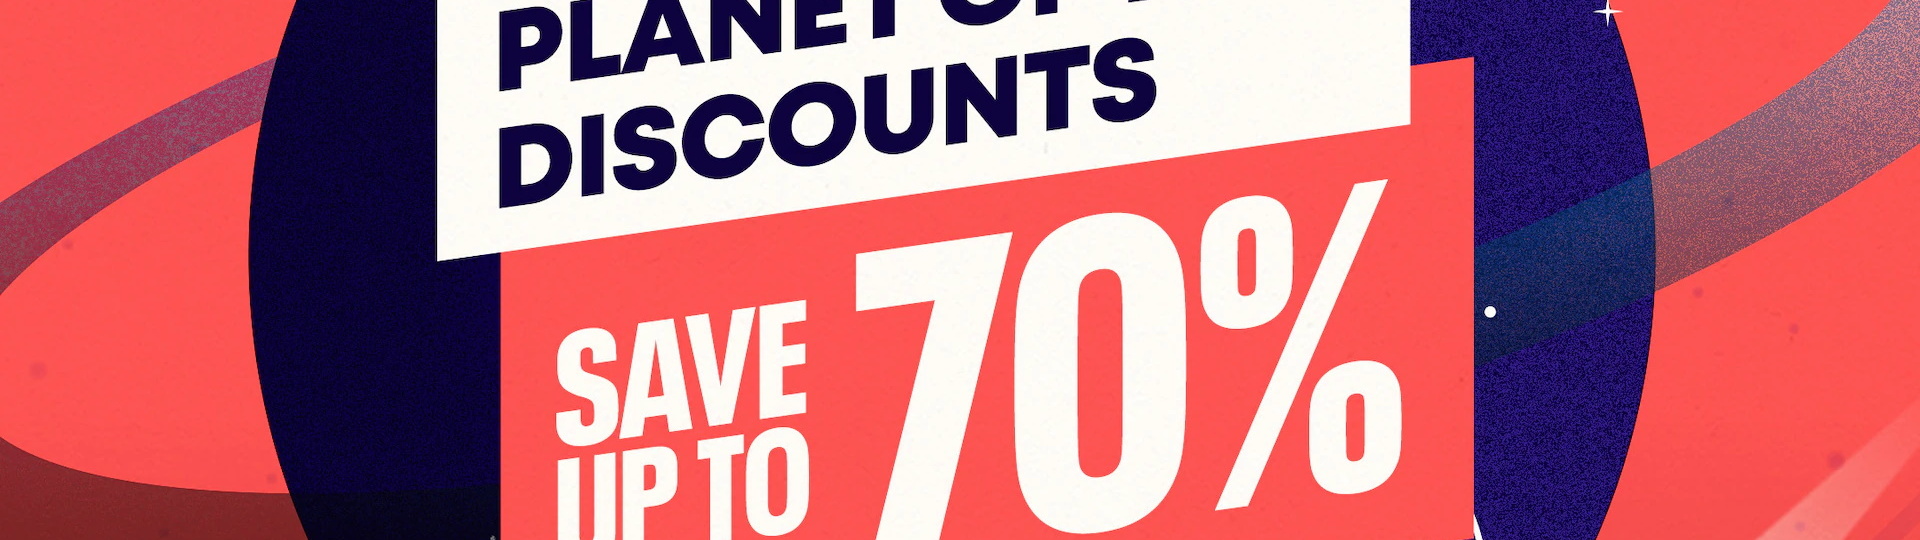 Slevová akce Planet of the Discounts opět nabízí stovky slev | Témata